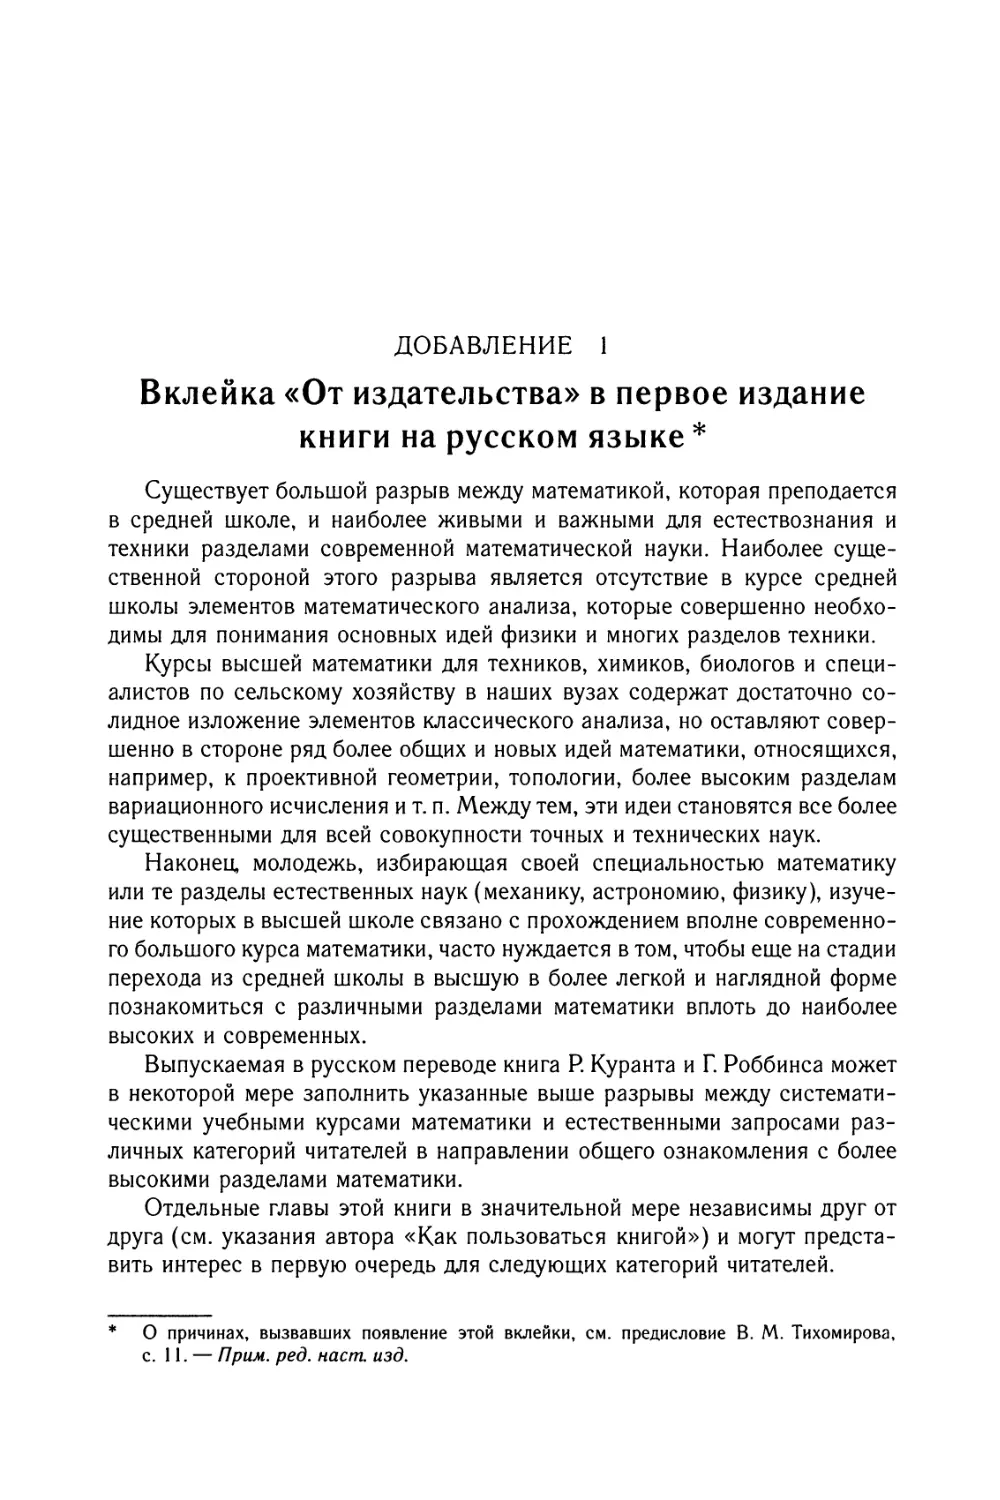 Добавление 1. Вклейка «От издательства» в первое издание книги на русском языке